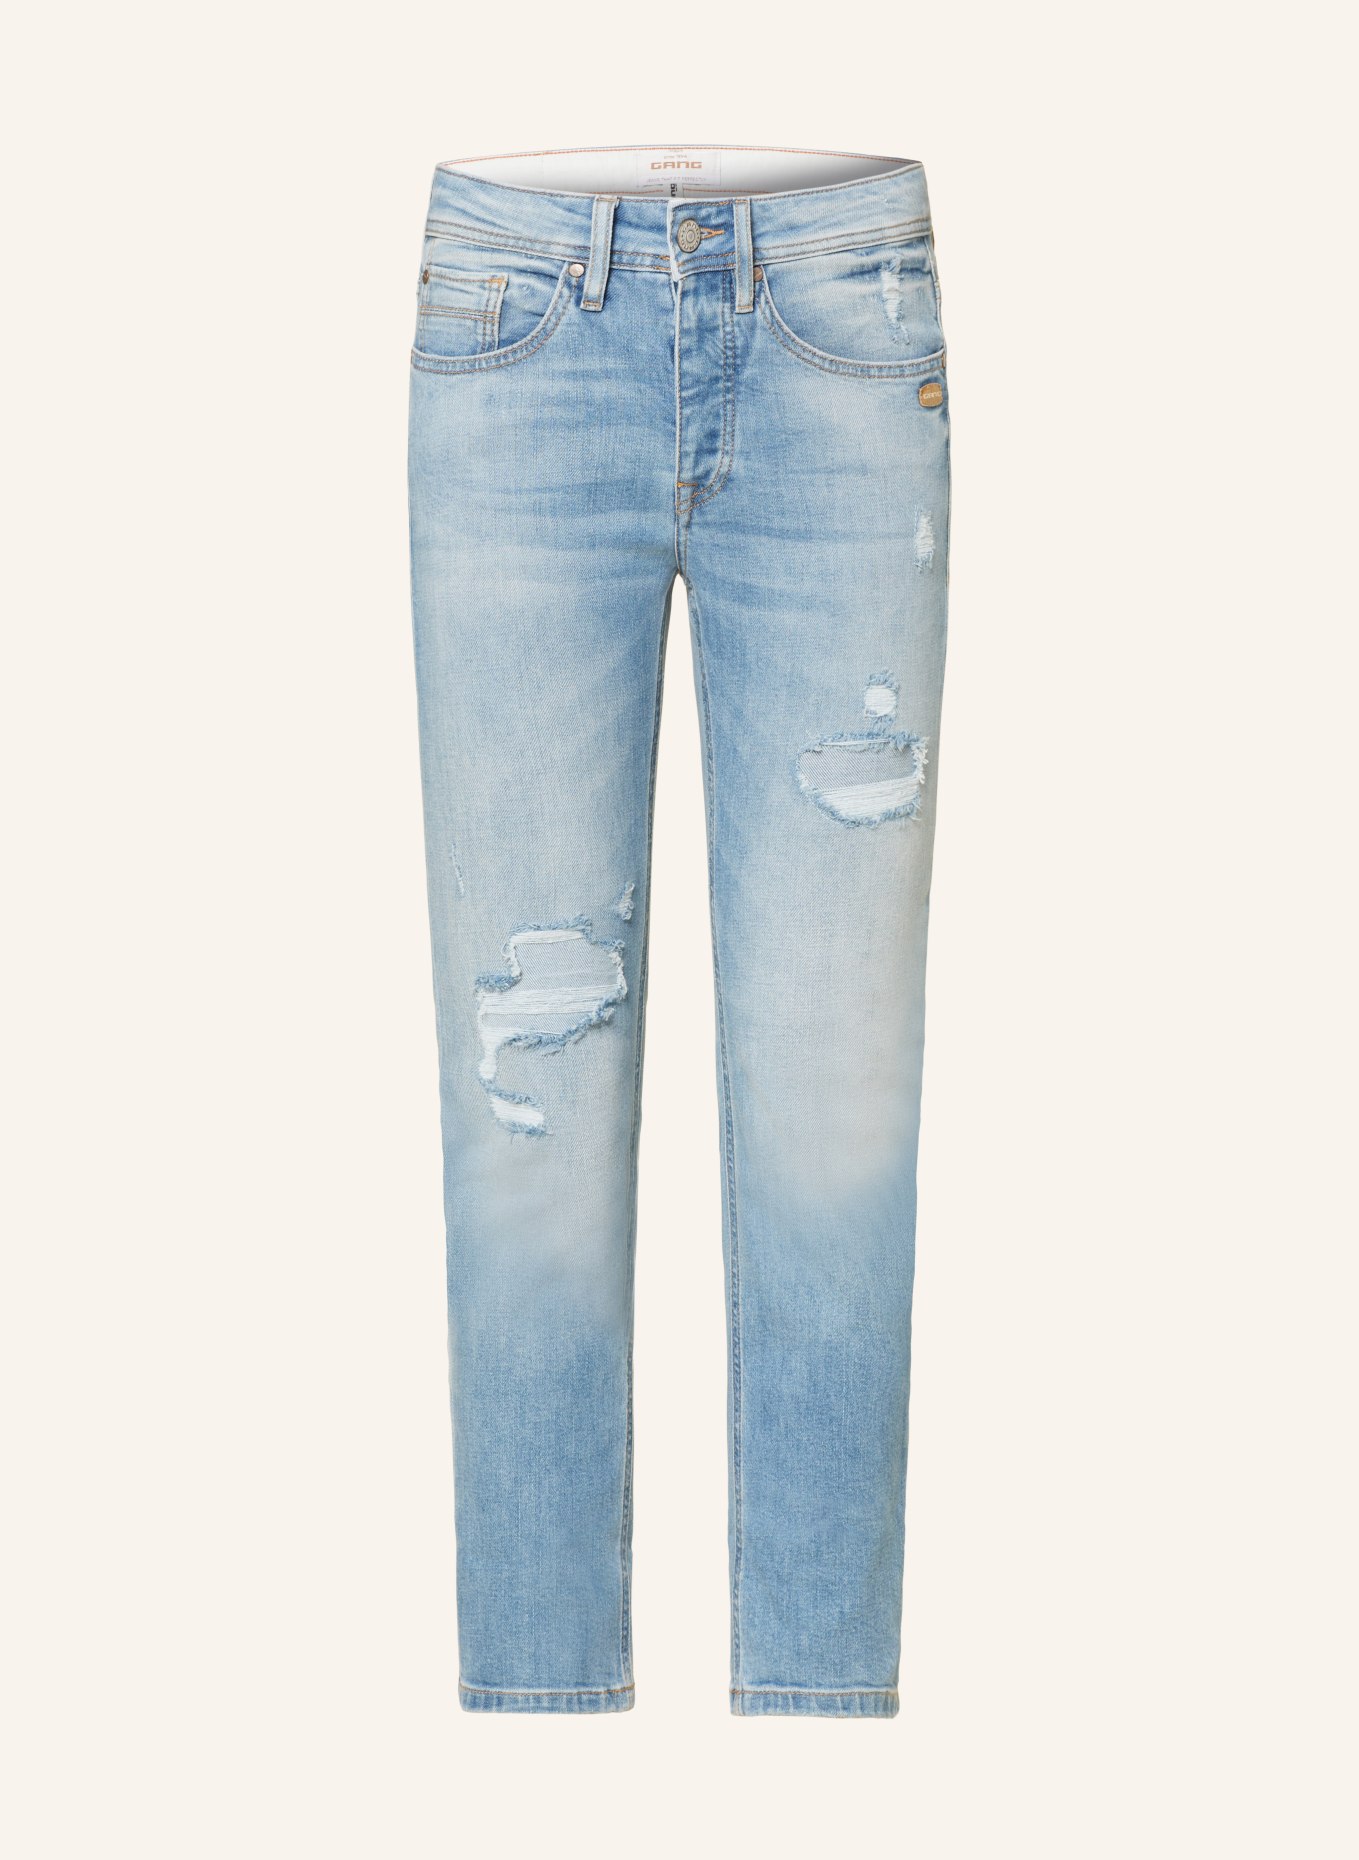 GANG 7/8 jeans NICA, Color: 7324 light blue destoyed (Image 1)